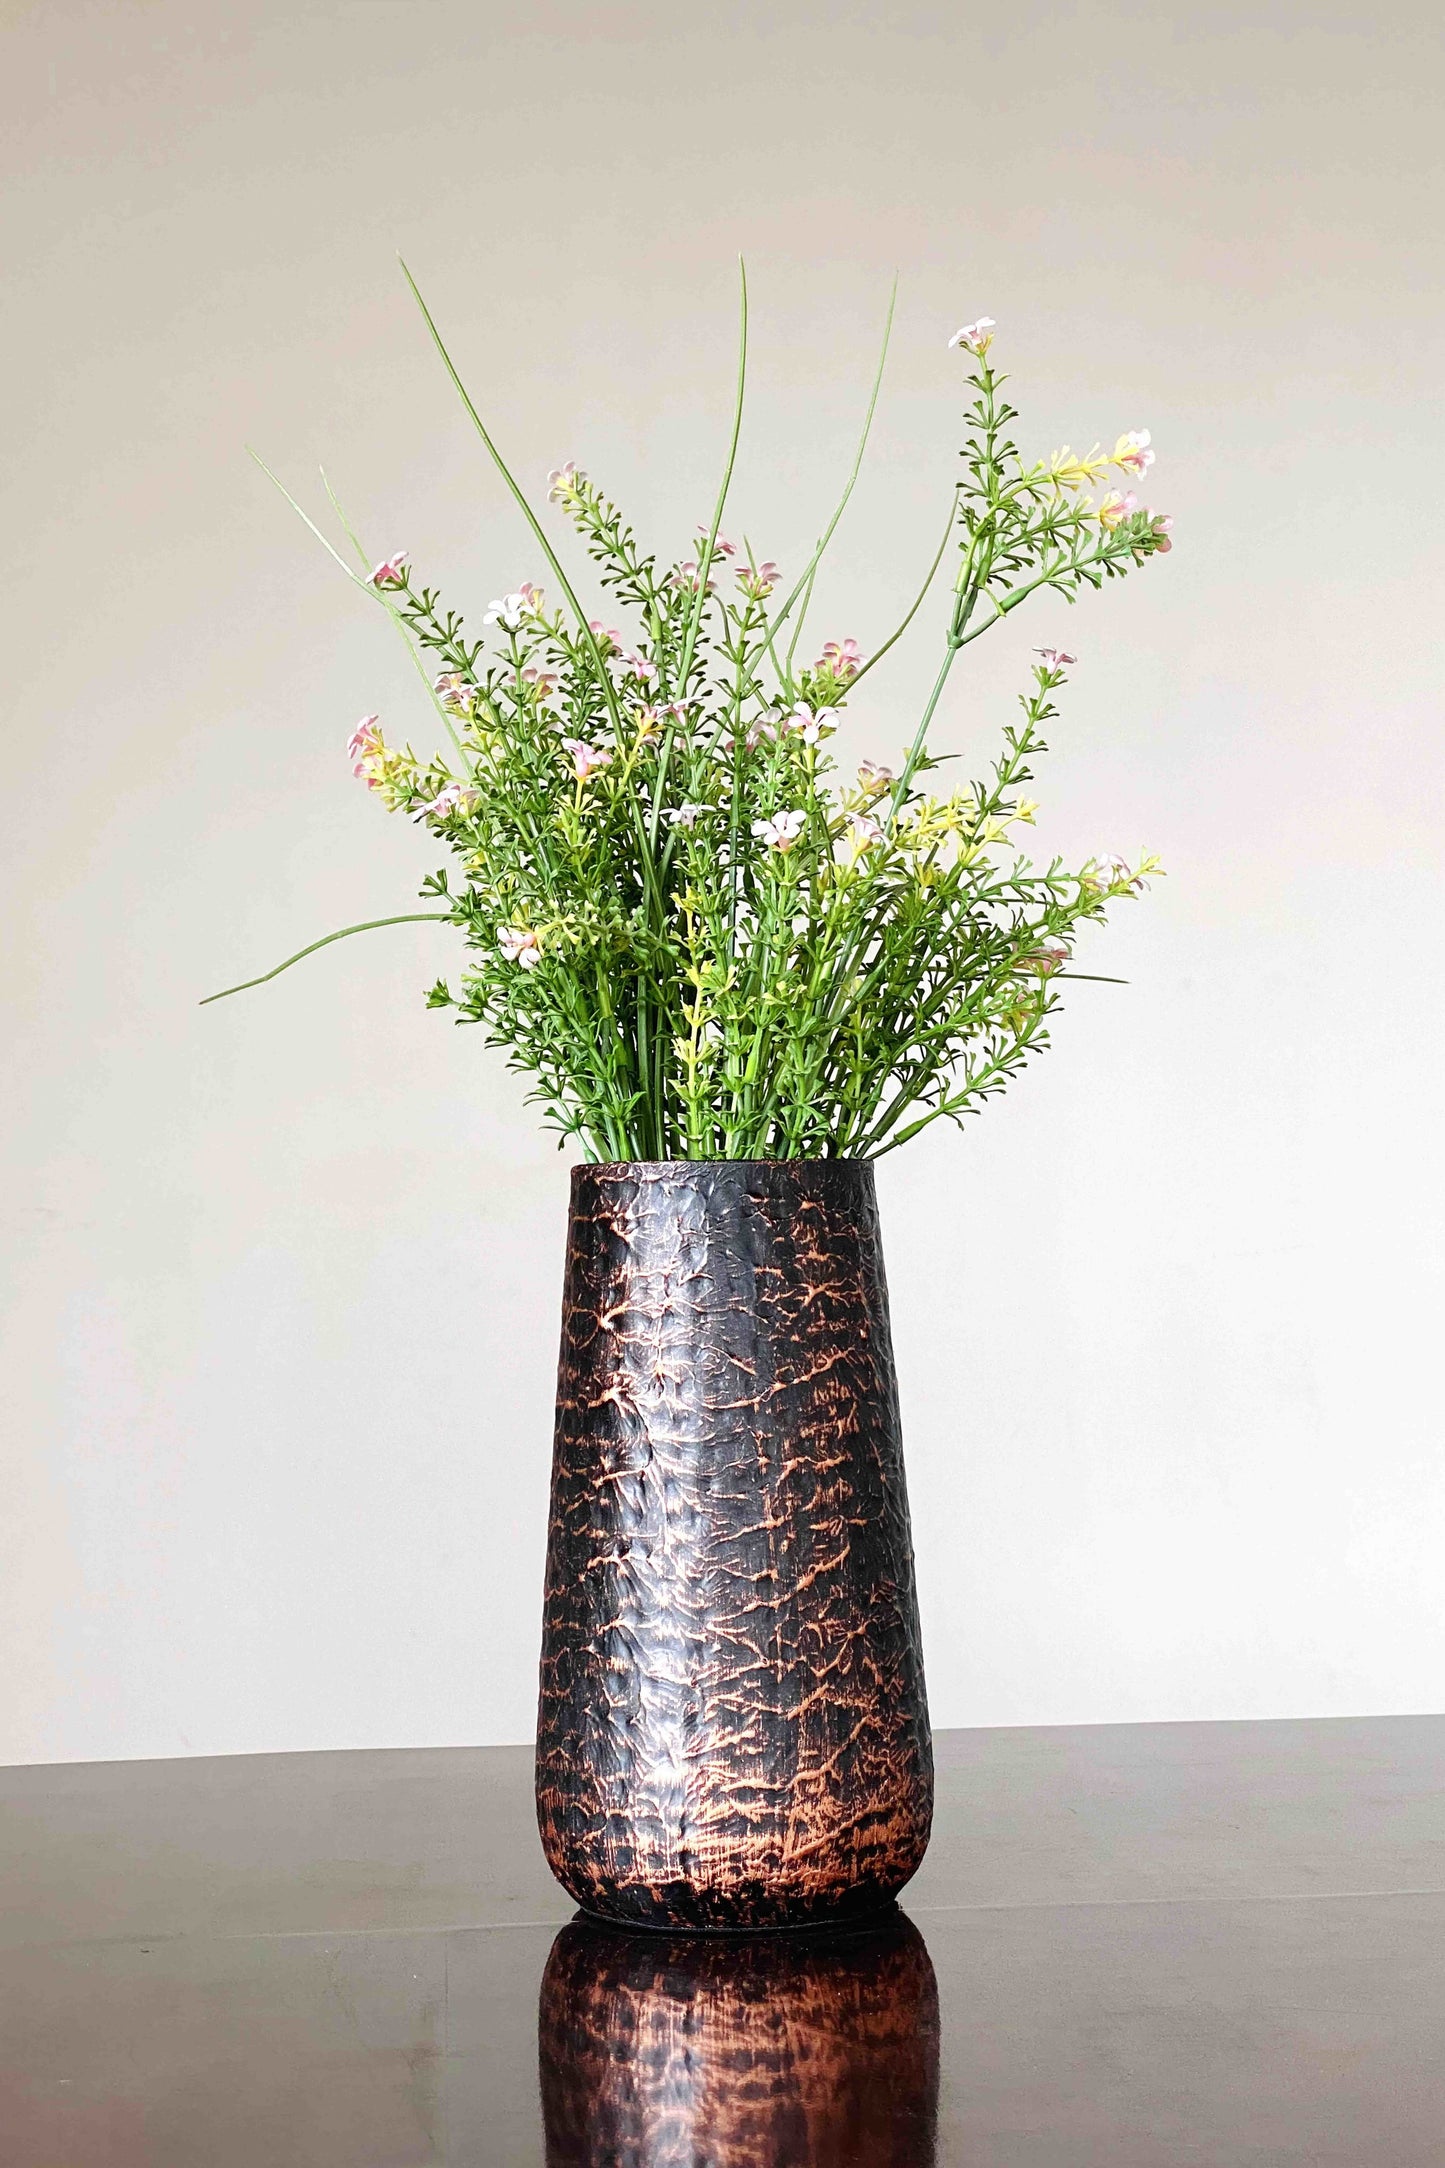 Century French Vase